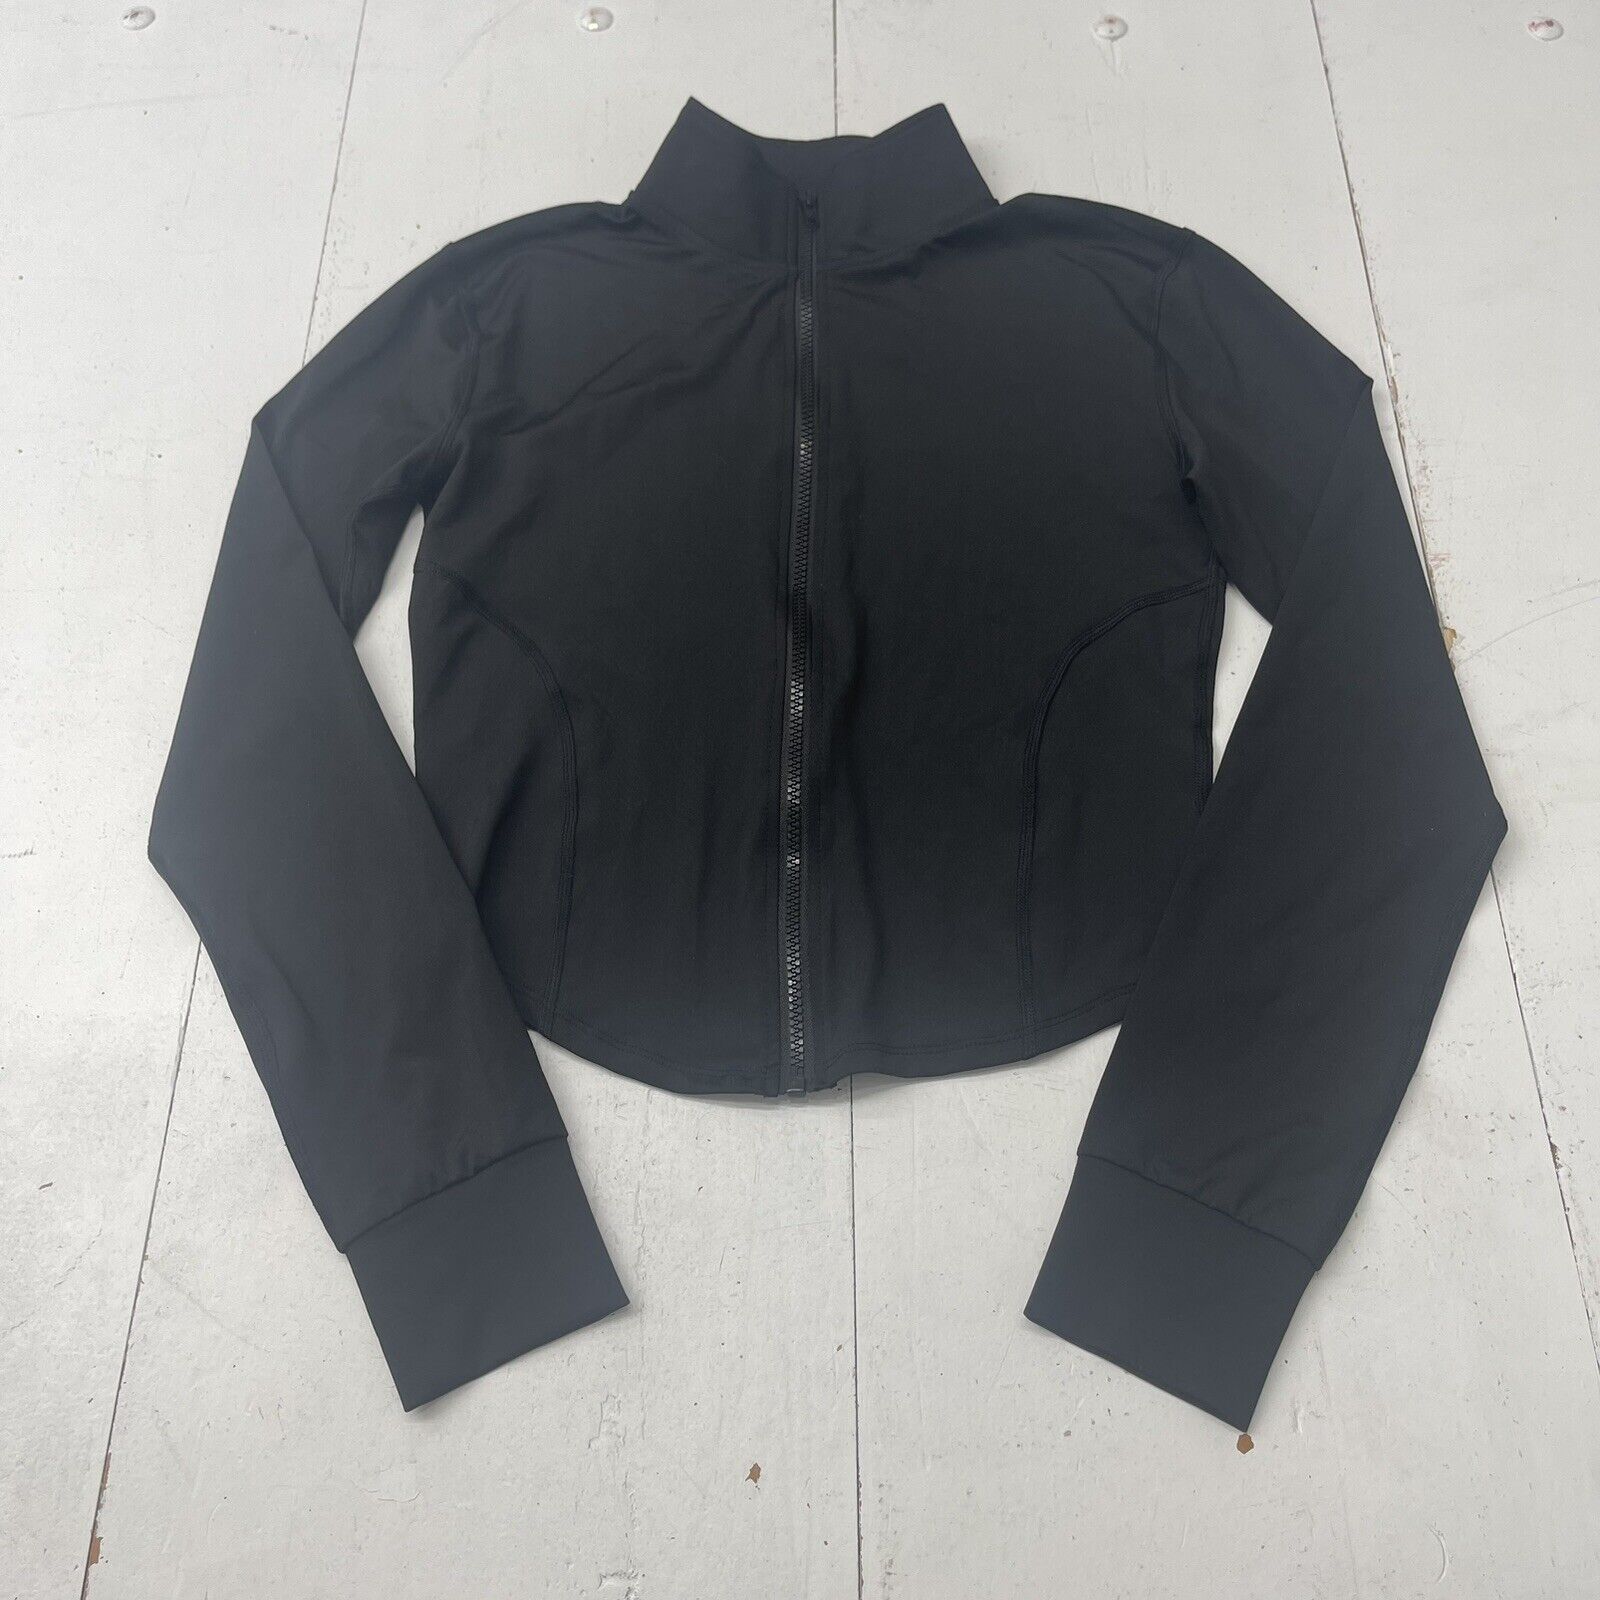 Fashion Black Crop Thumbhole Long Sleeve Zip Up Jacket Women’s Large